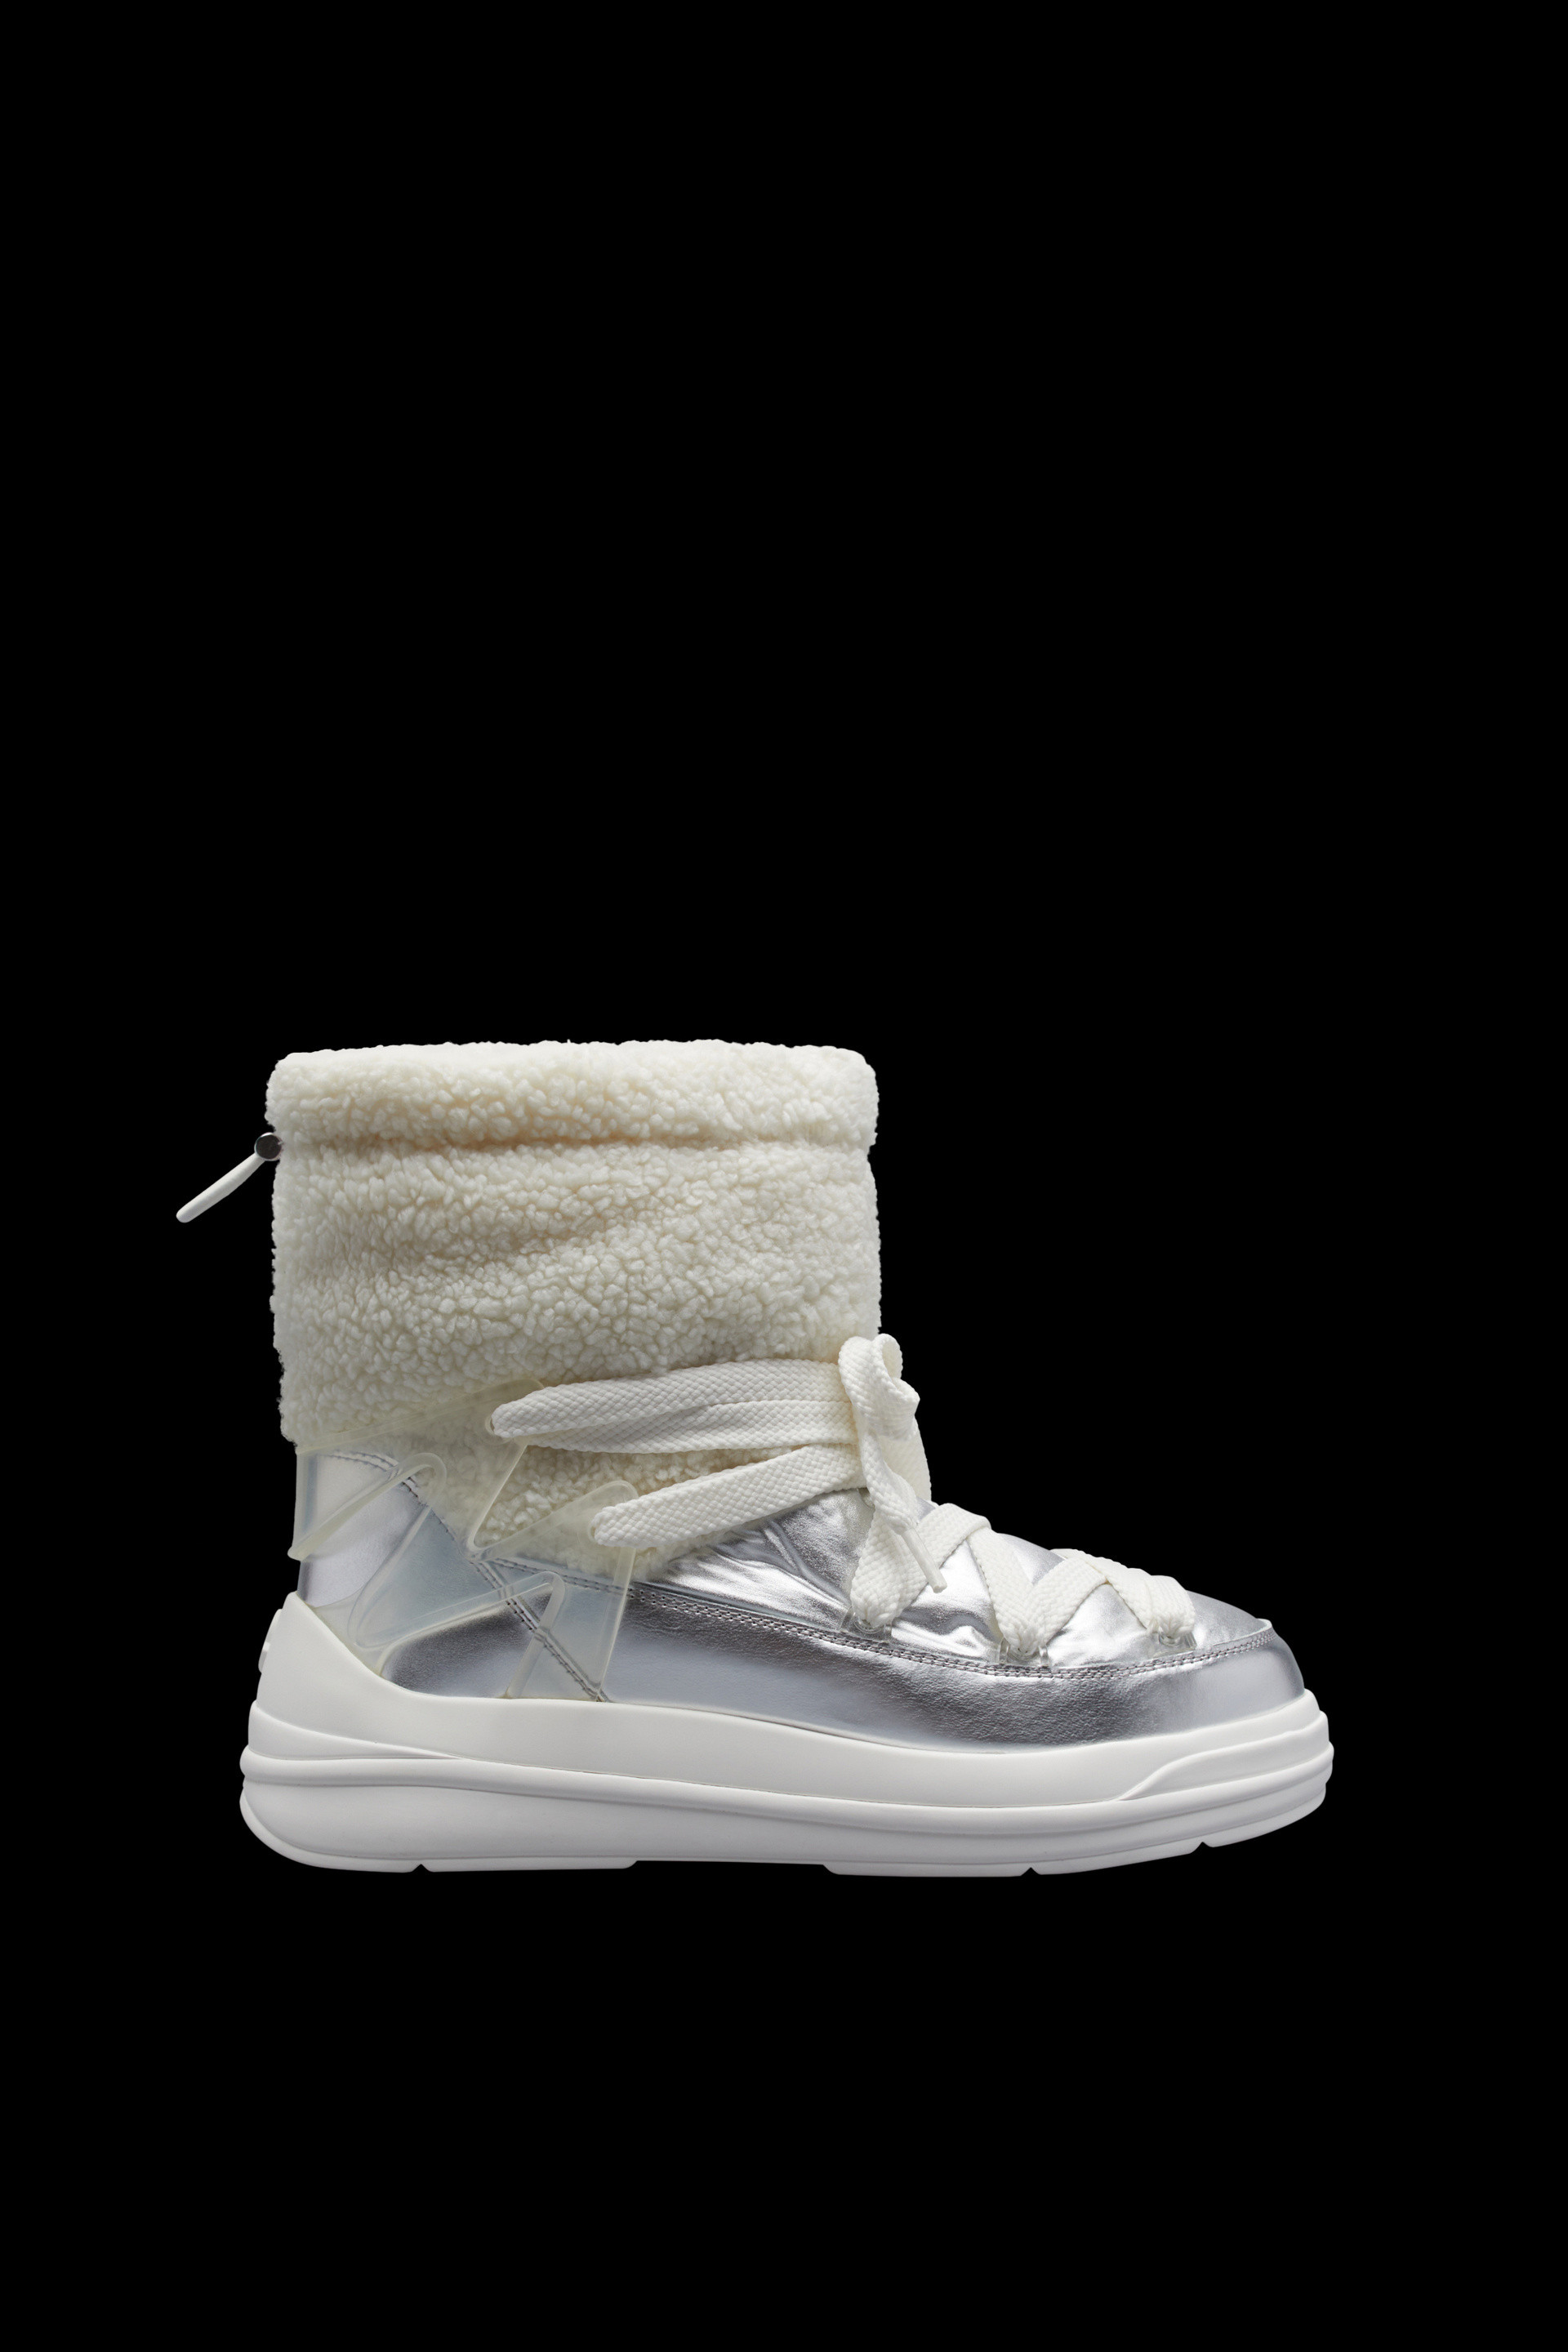 Moncler Schneestiefel Insolux in Weiß Damen Schuhe Stiefel Stiefeletten 